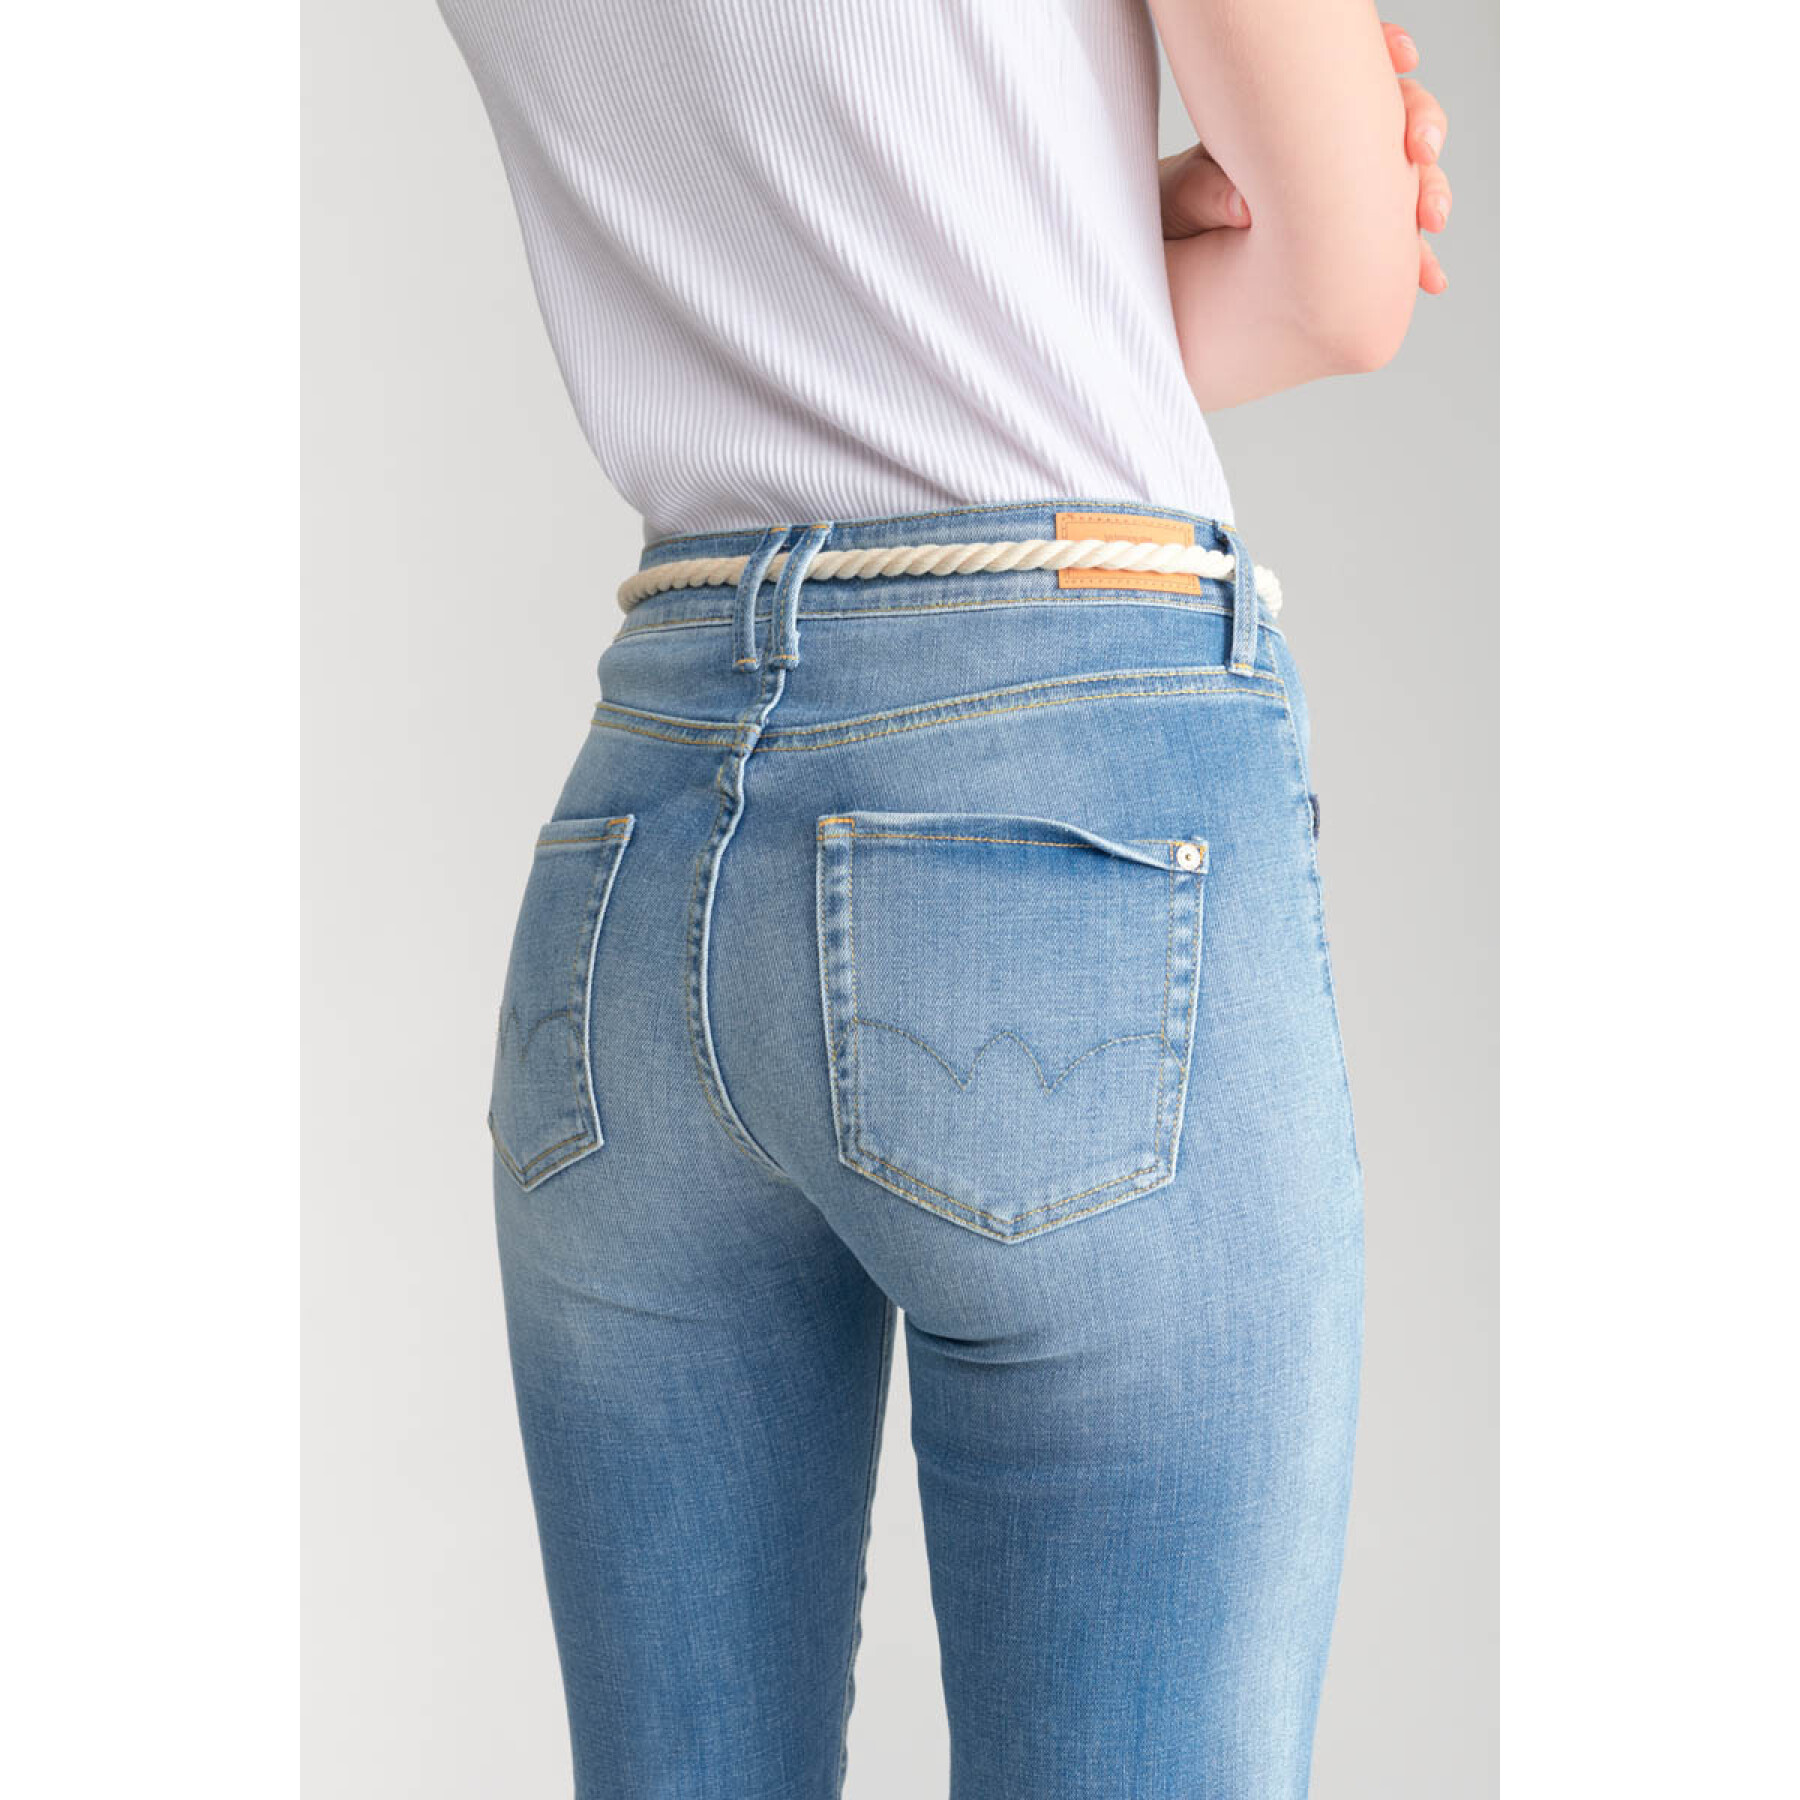 Women's jeans Le Temps des cerises Pricilia 7/8 N°4